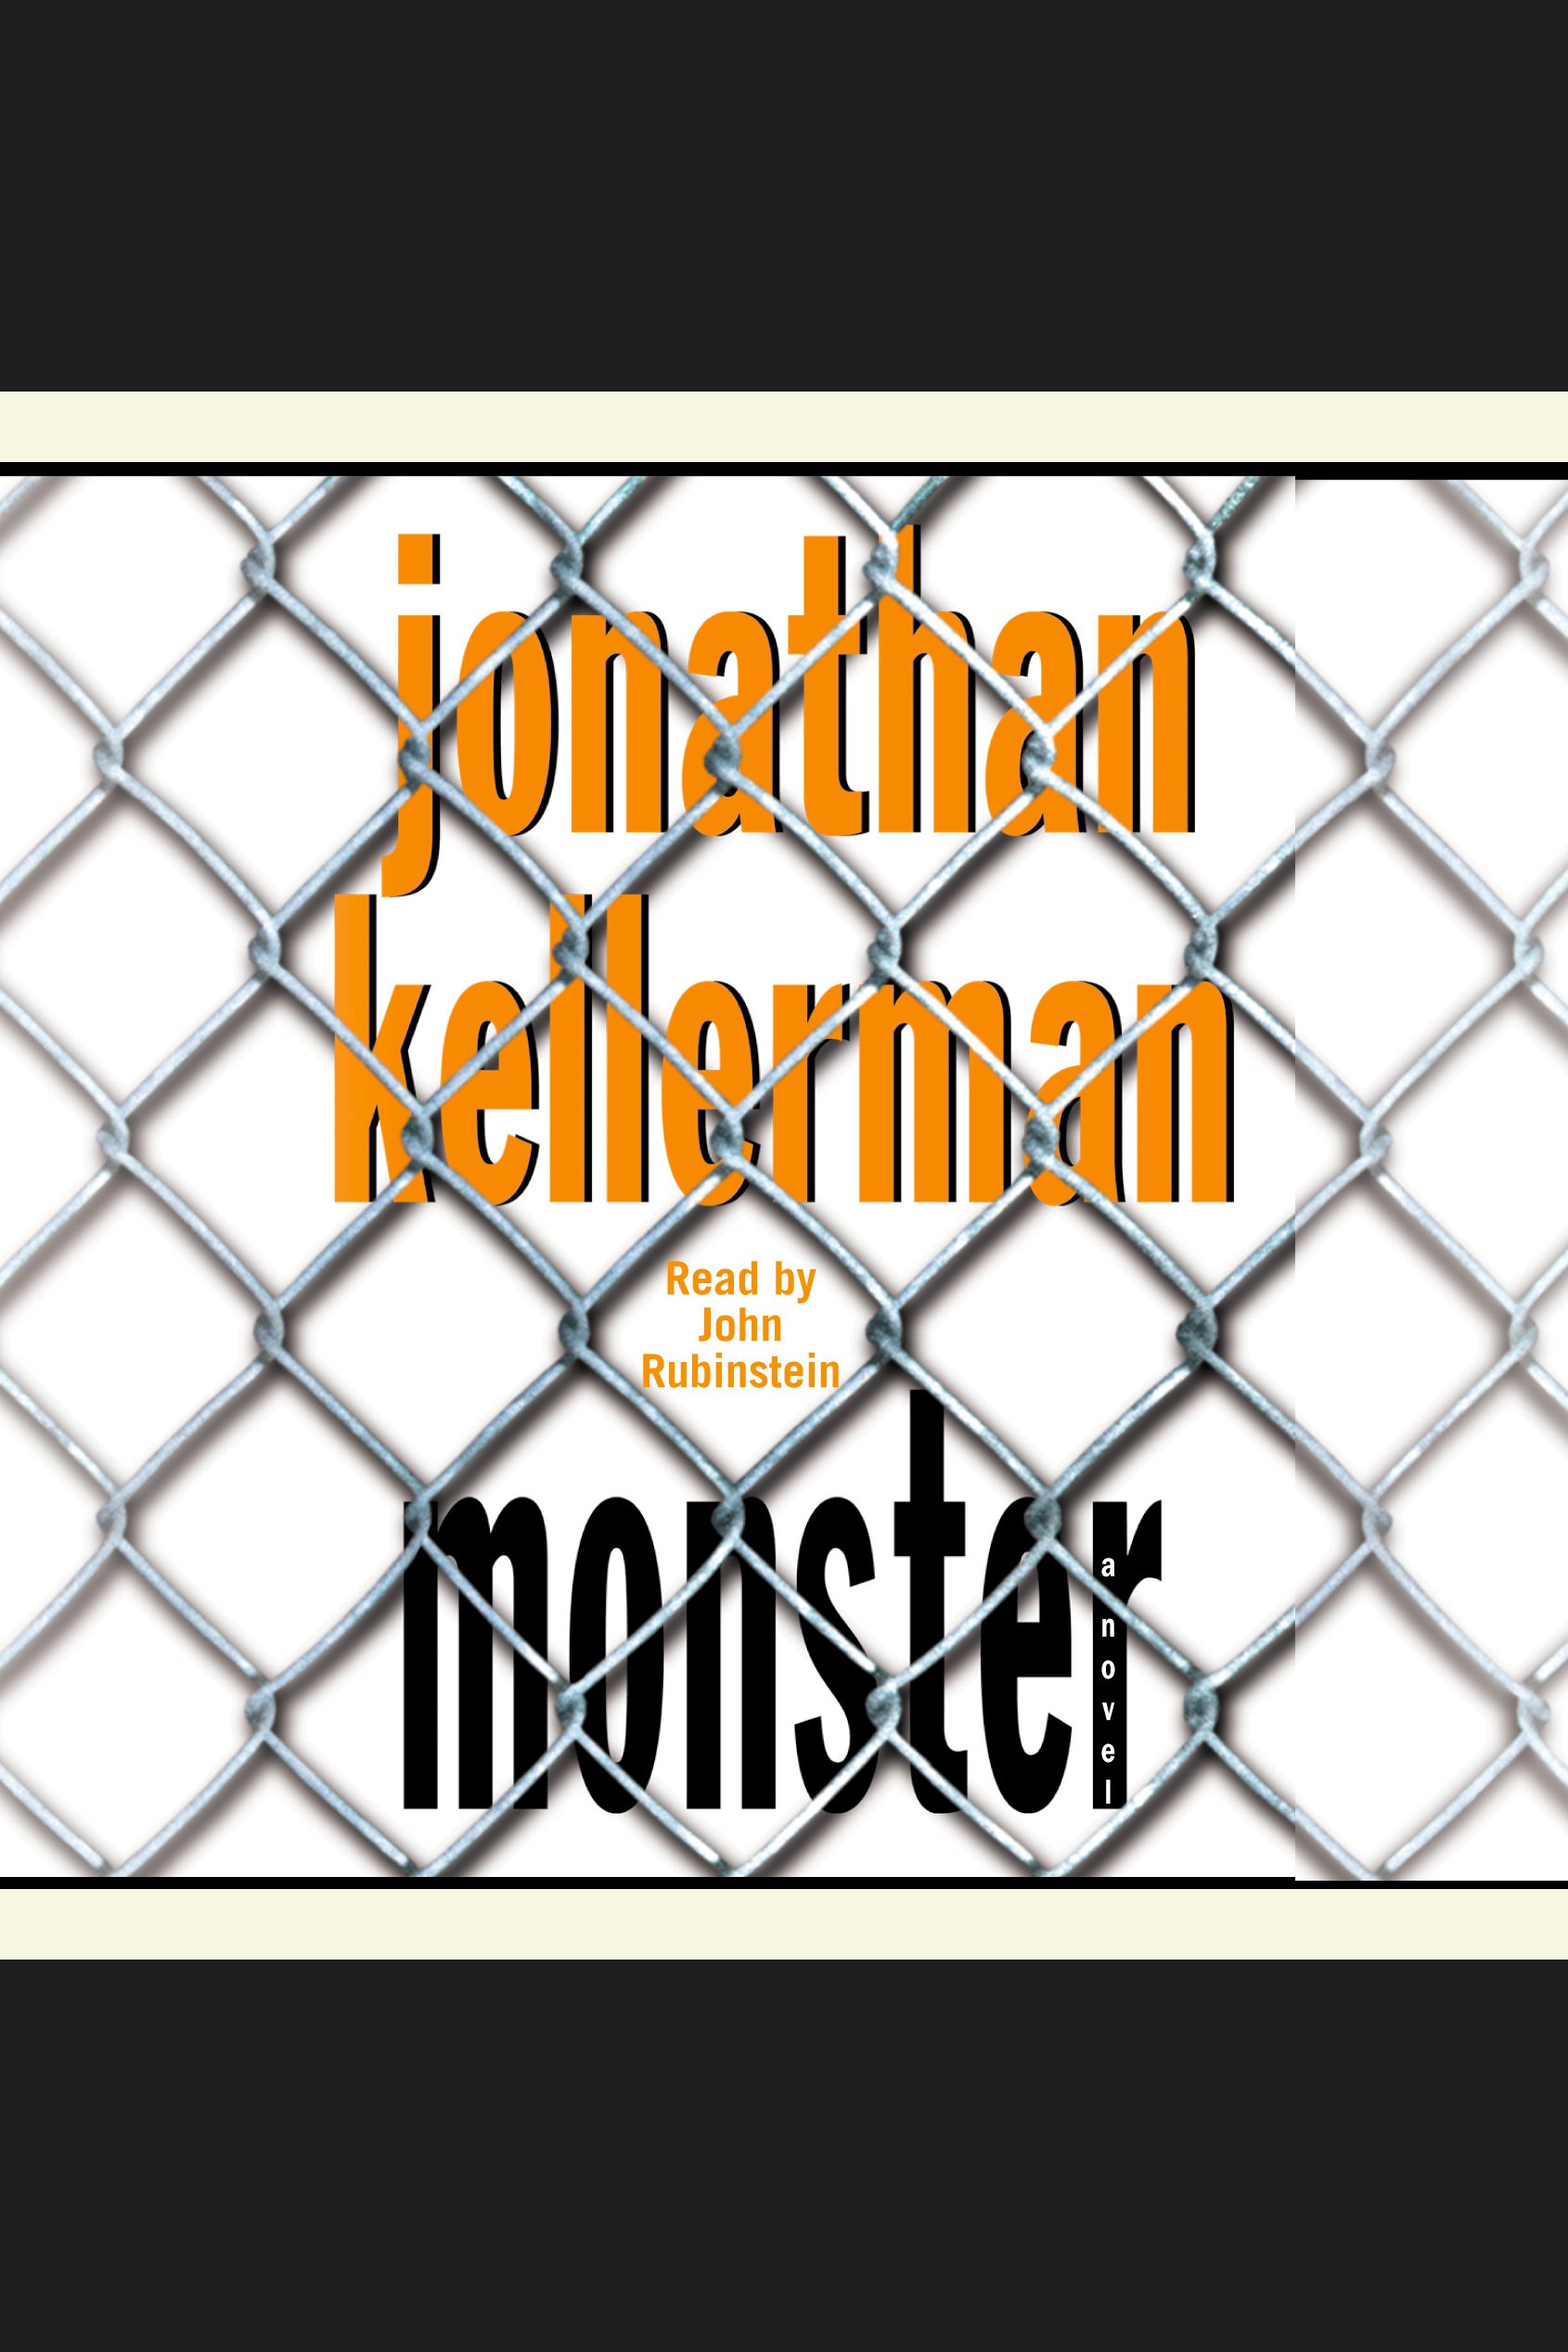 Image de couverture de Monster [electronic resource] : An Alex Delaware Novel